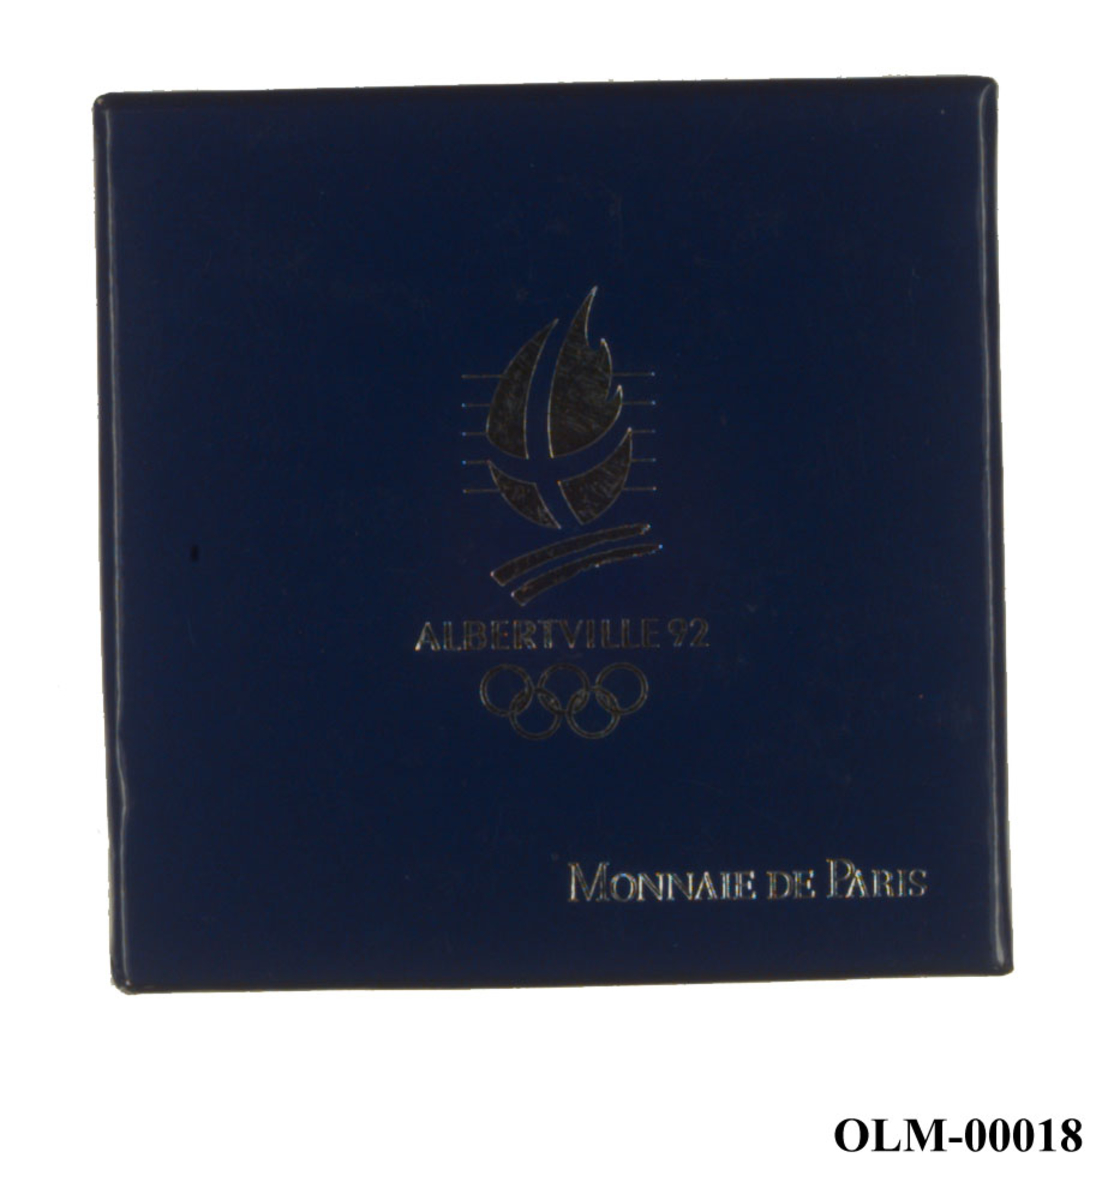 Sølvfarget minnemedalje med emblemet for de olympiske vinterleker i Albertville i 1992 og motiv av en stjerne over alpene og de olympiske ringene. 